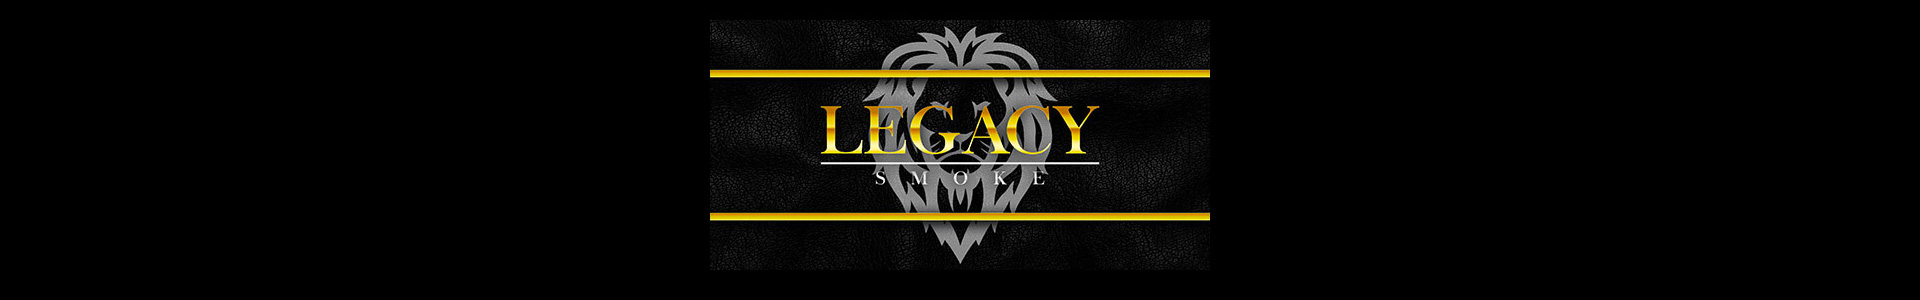 legacy-smoke